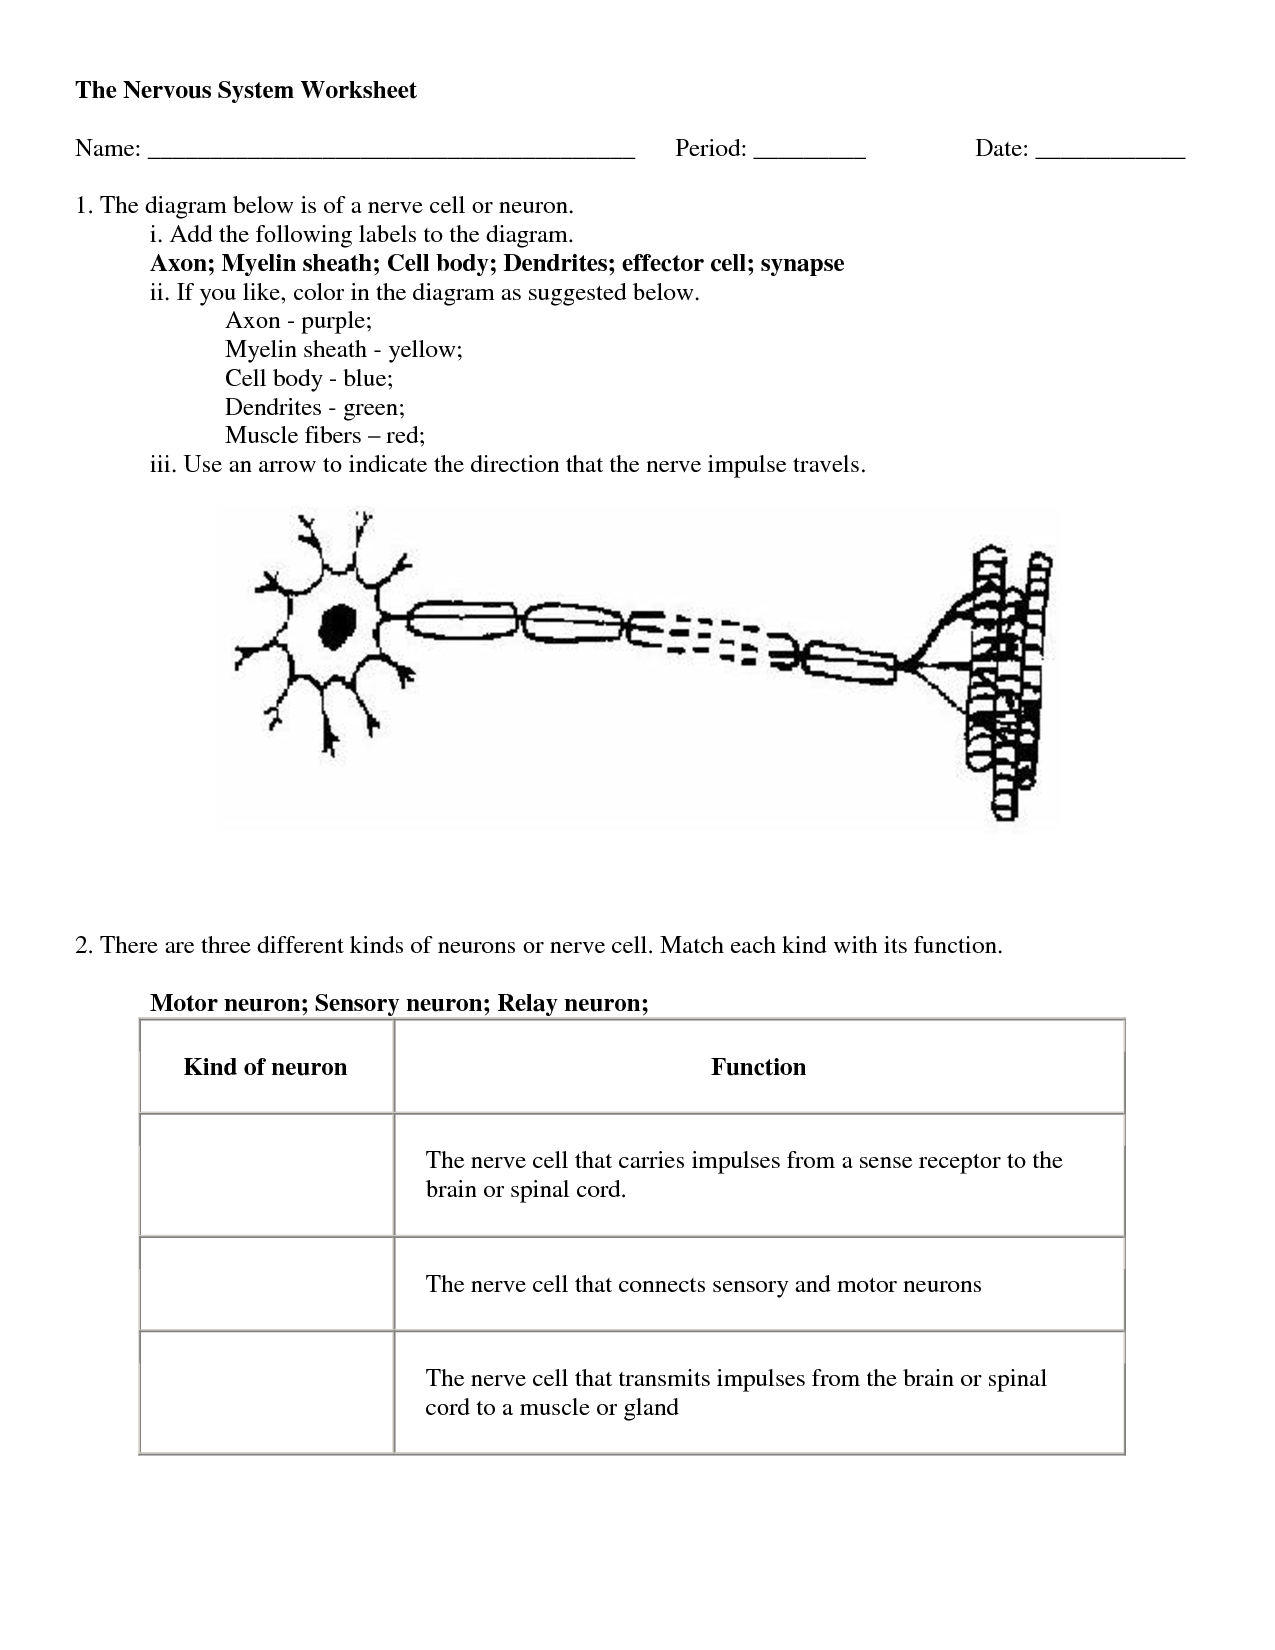 Central Nervous System Coloring Pages Nervous System Worksheet Middle School The Best Worksheets Image